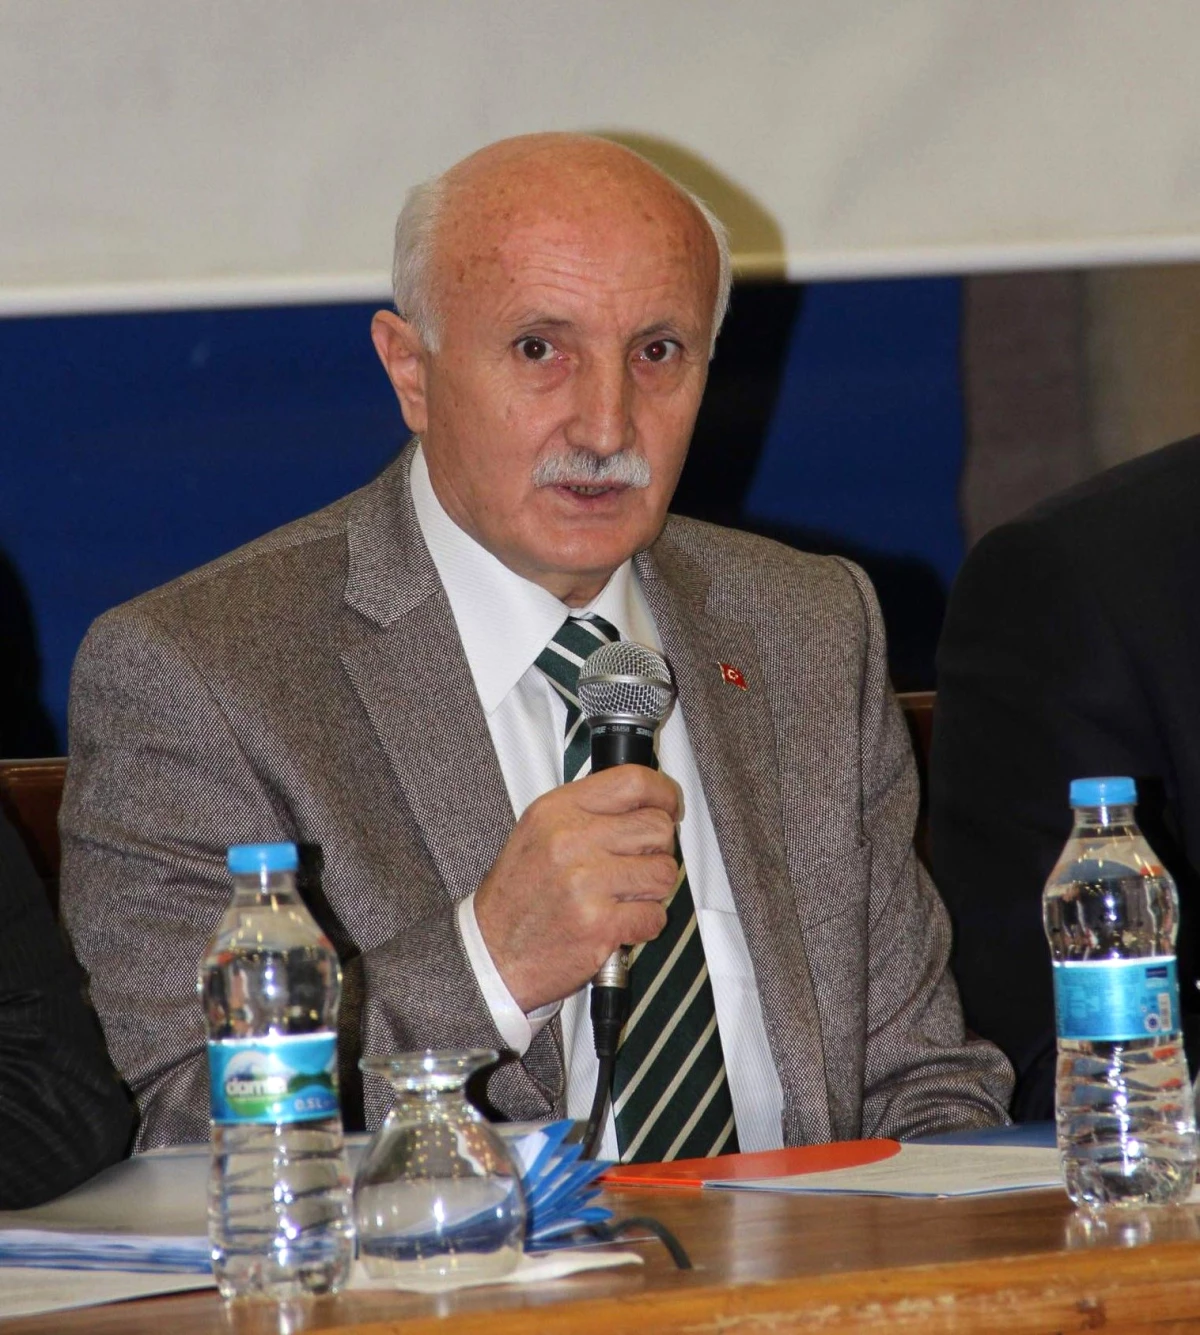 Darbeleri Araştırma Alt Komisyon Başkanı Yaşar Karayel Açıklaması